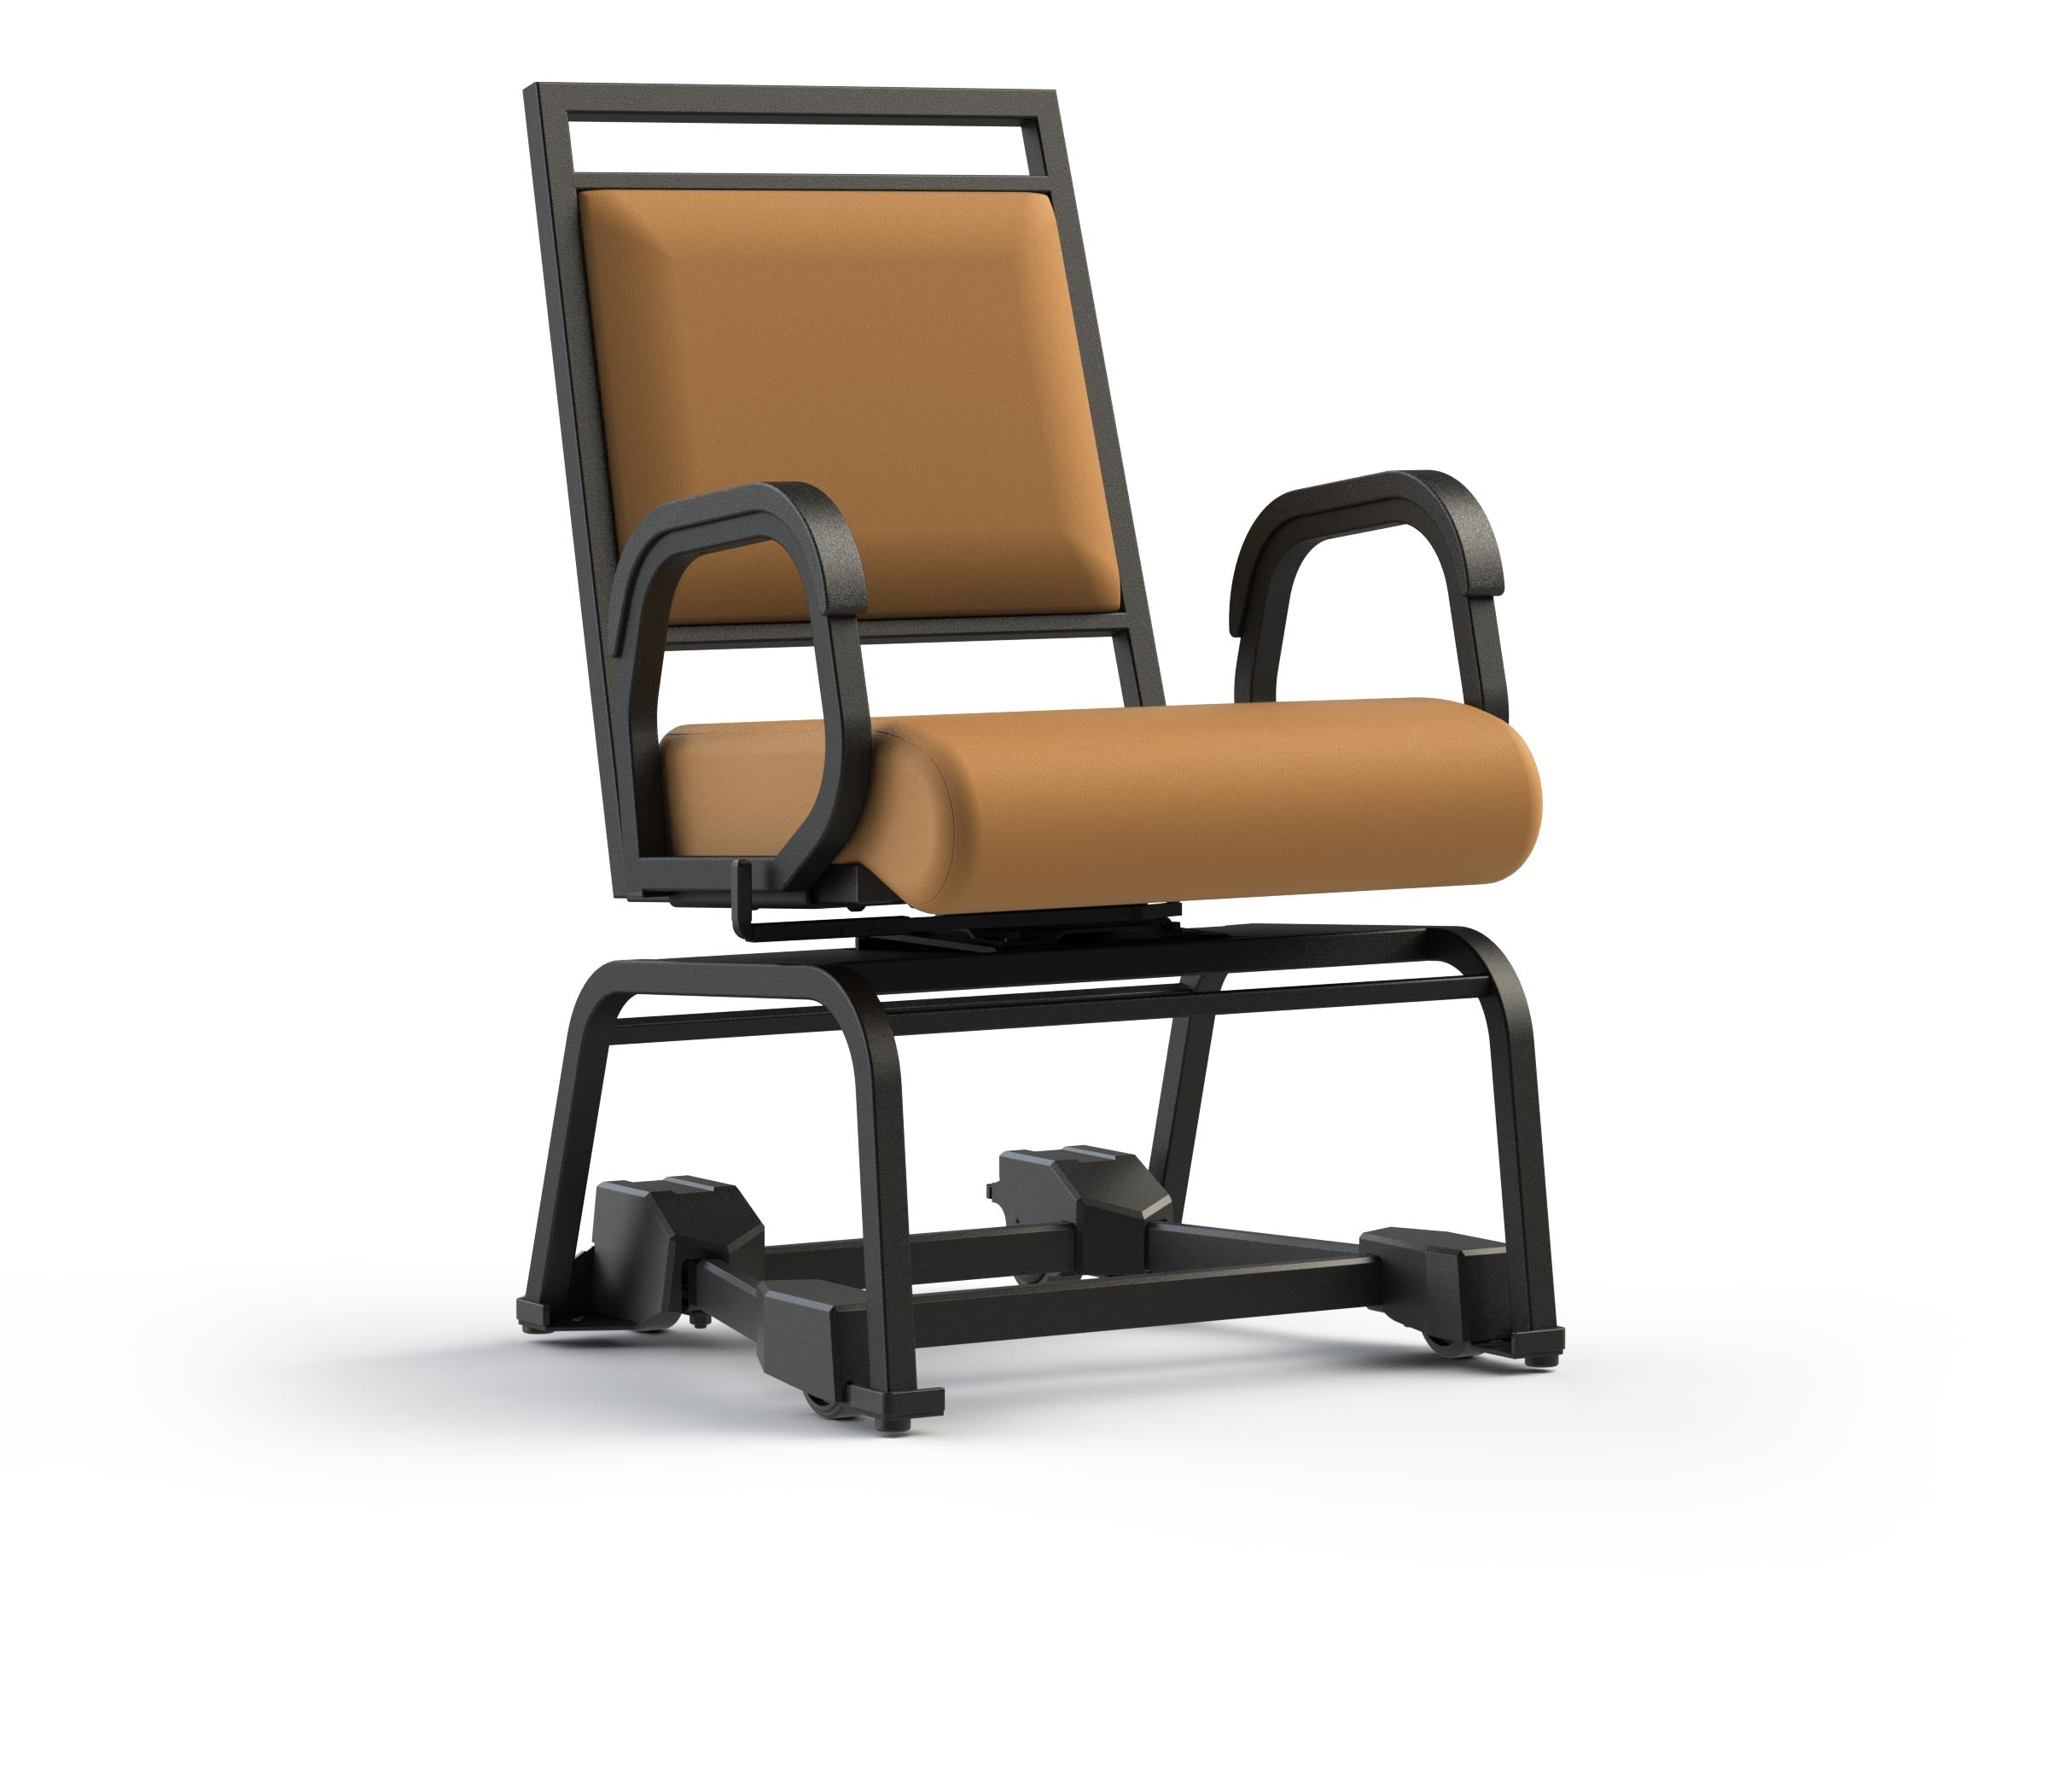 SWIVEL SEAT Base model for elderly 